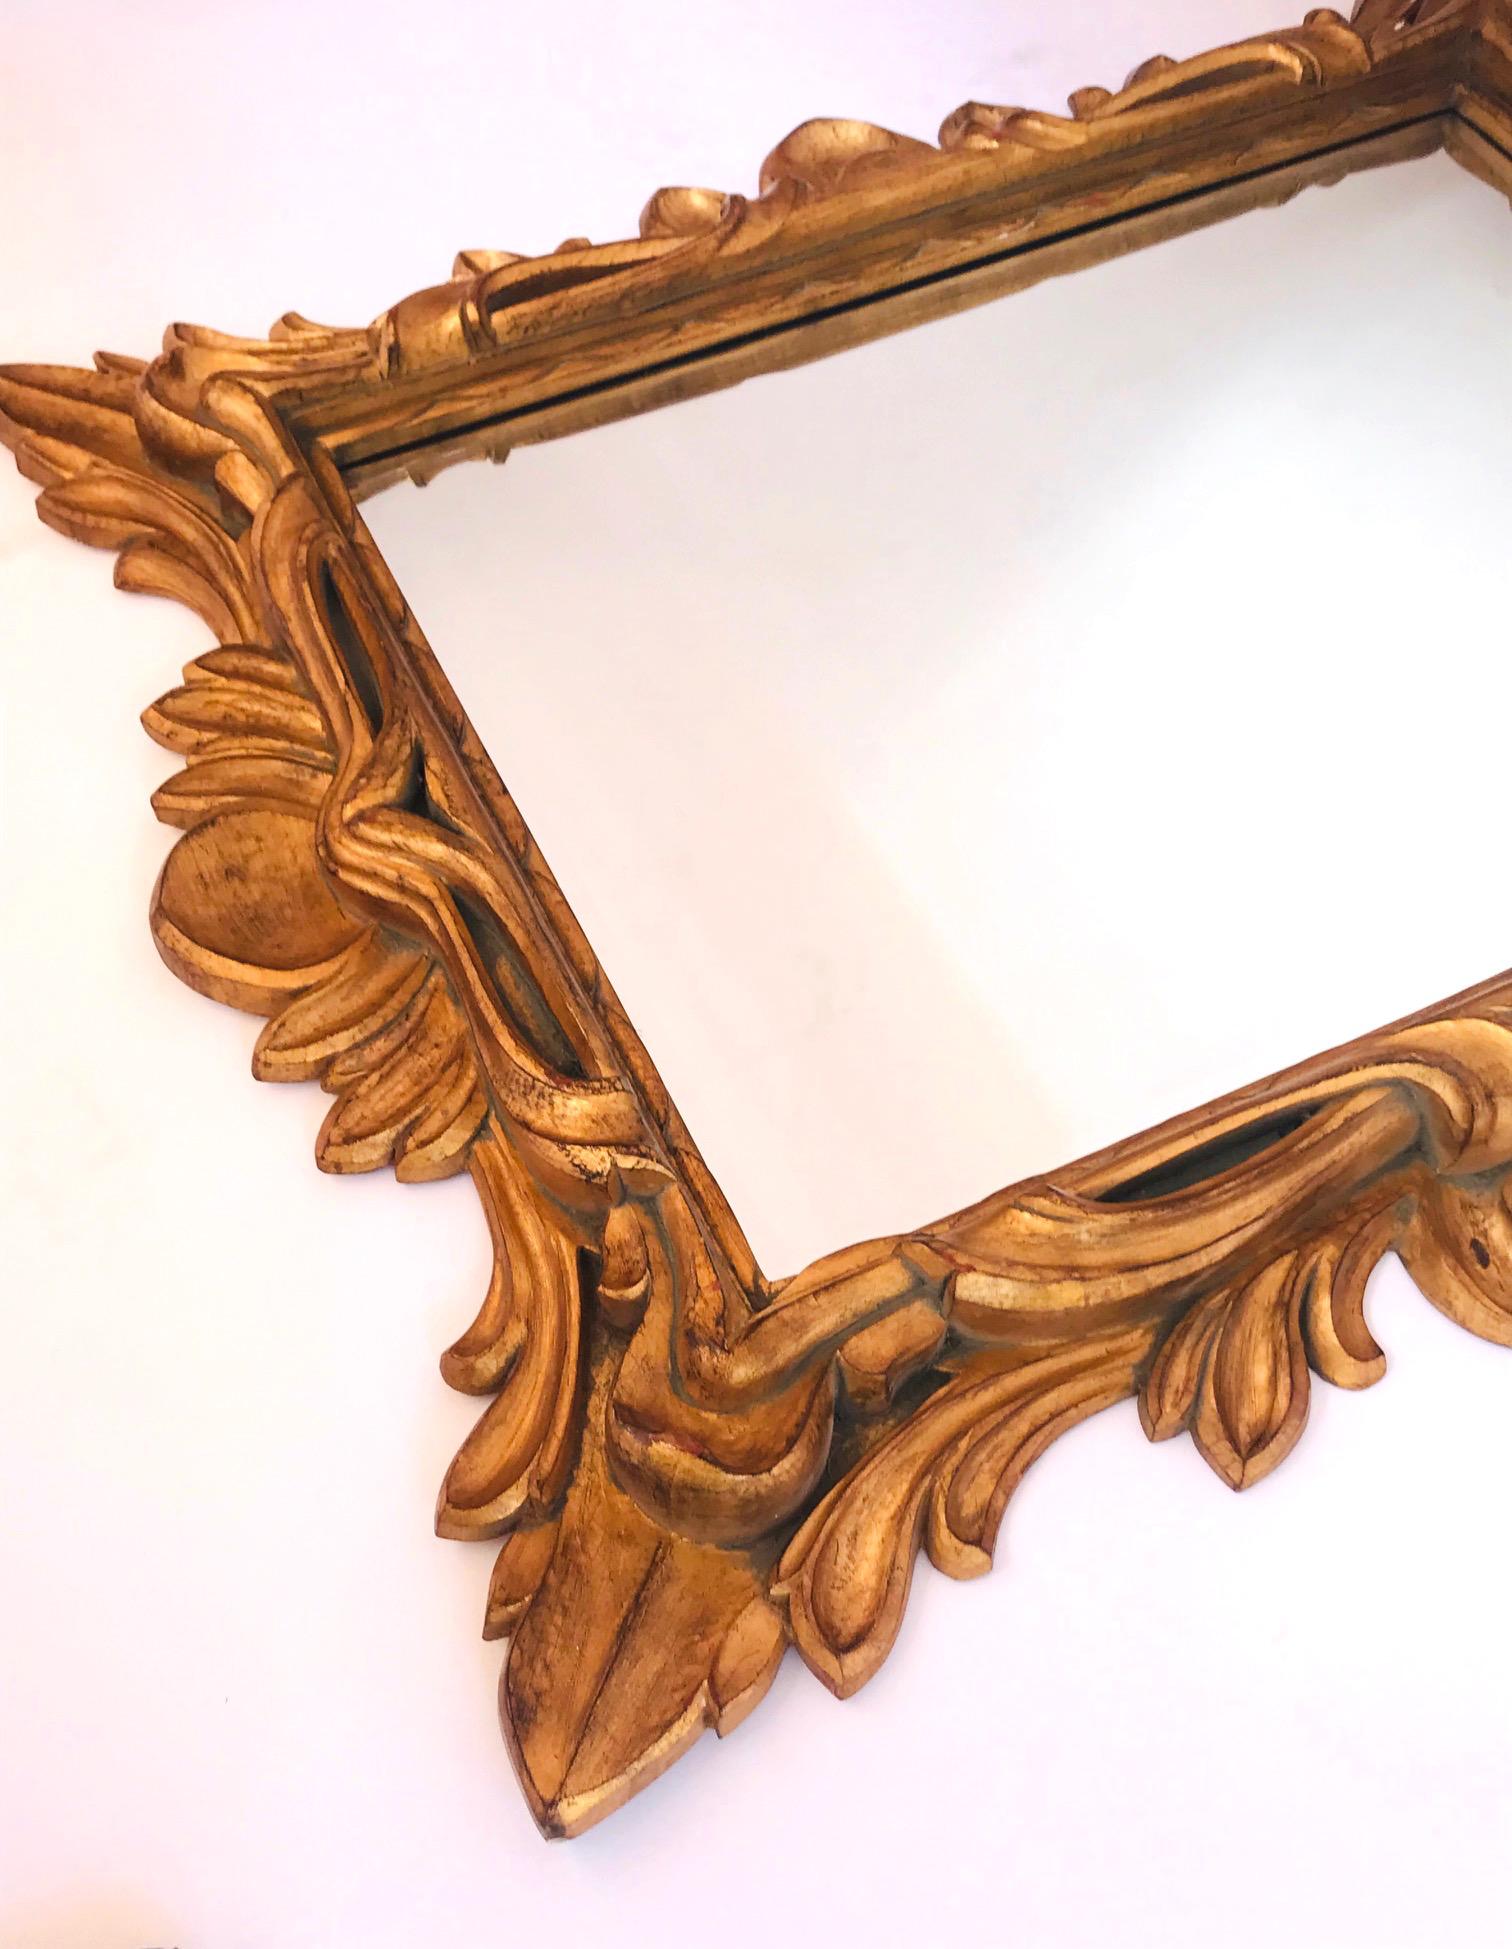 Beveled Monumental Baroque Gold Leaf Mirror with Ornate Carved Frame